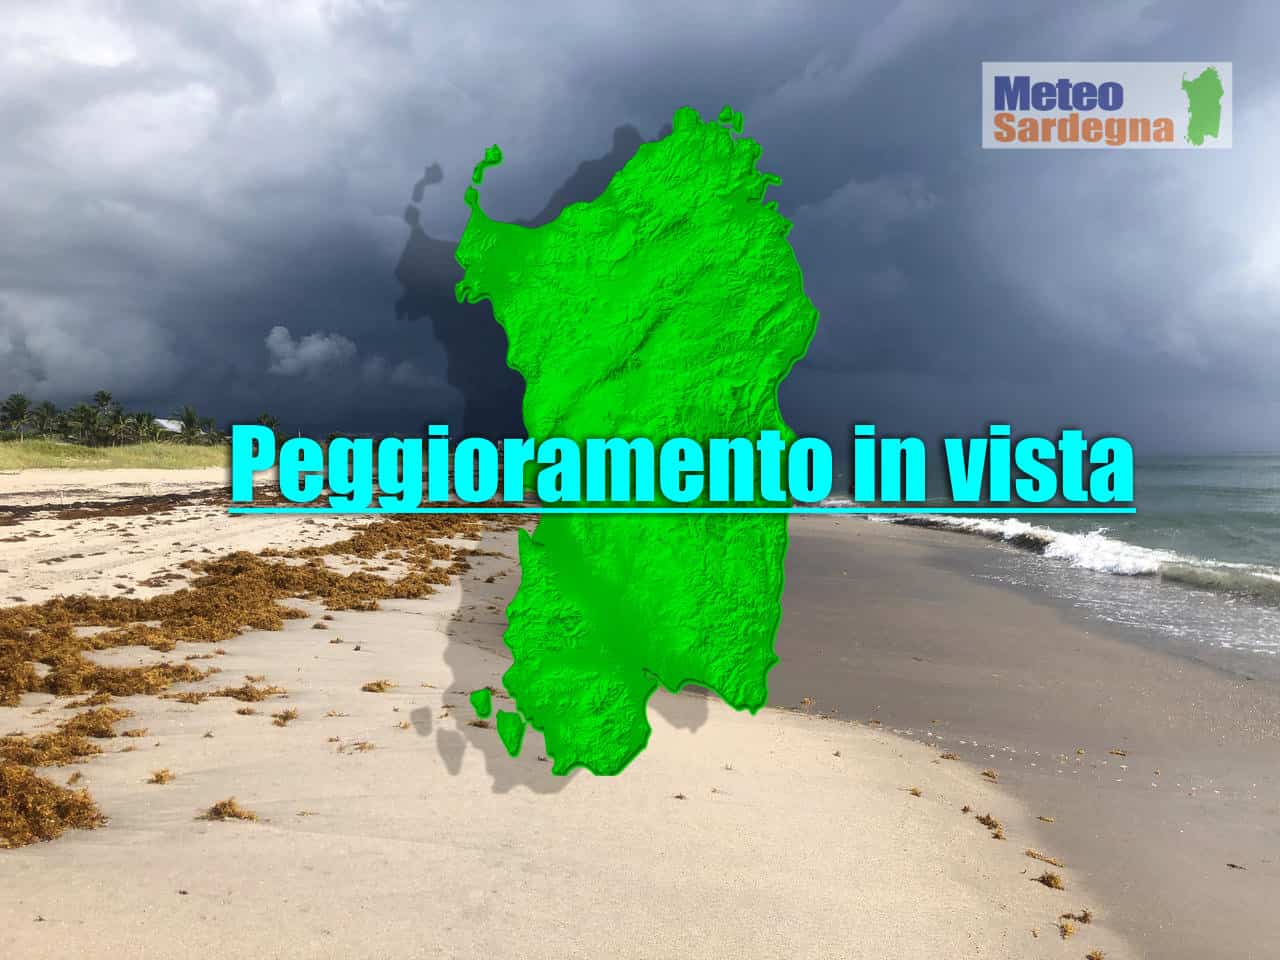 meteo sardegna 3 - Sardegna prossima al peggioramento: meteo da seguire con attenzione